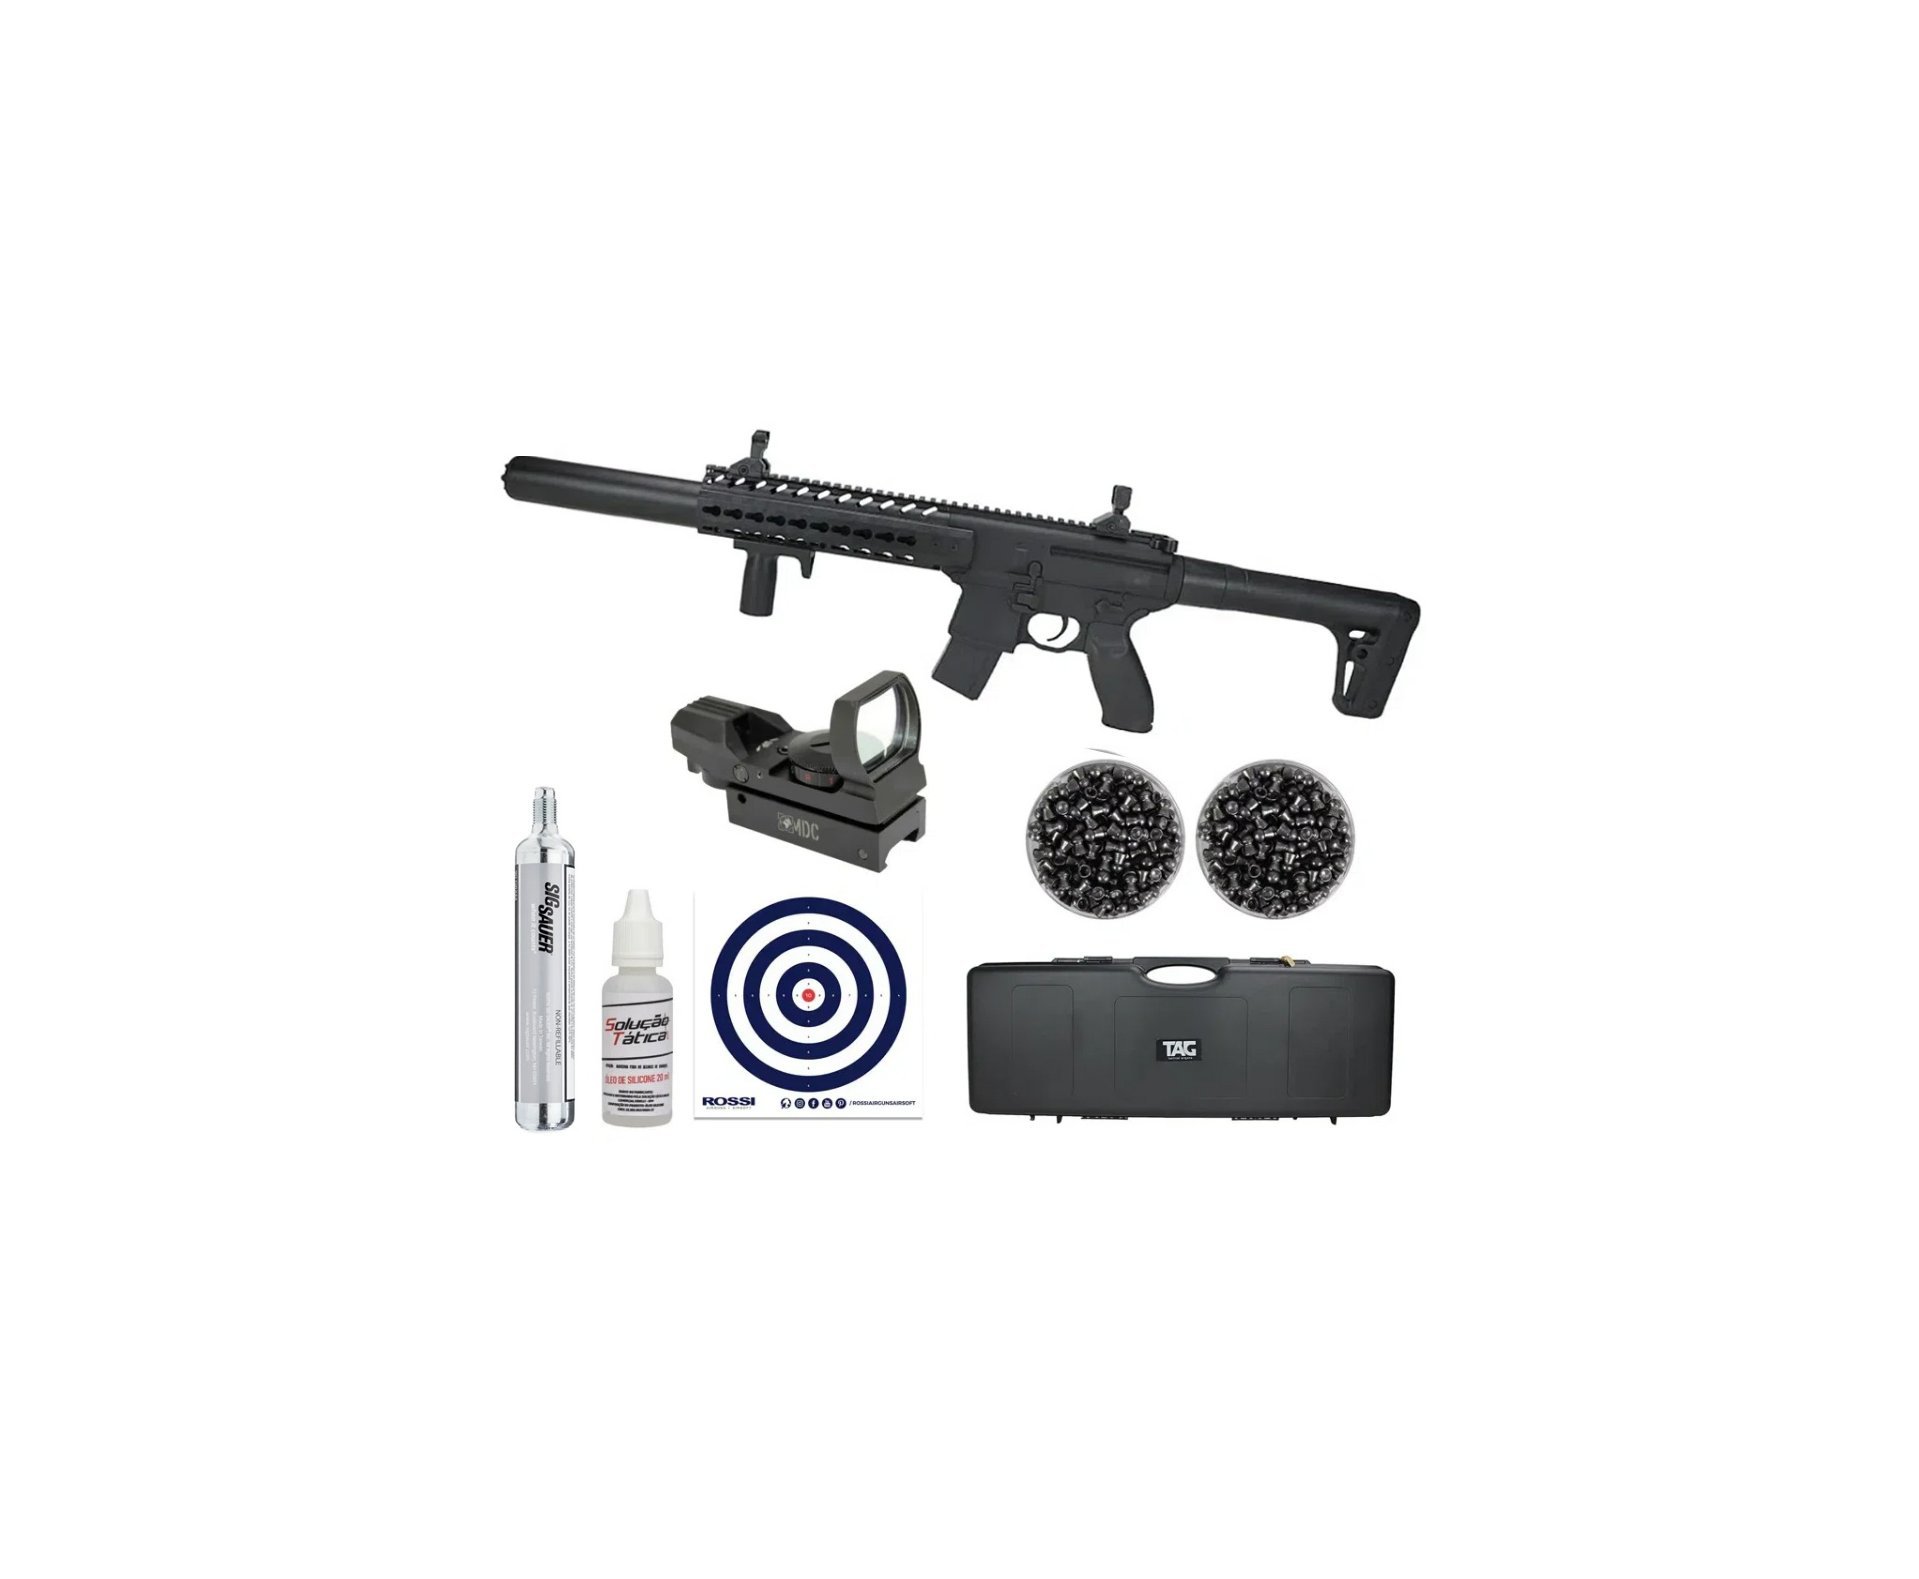 Rifle de Pressão CO2 SEMI-AUTO Sig Sauer MCX 30 BK 4,5mm Chumbinho + Case Rigido + Alvos + 2CX de Chumbo + Óleo de silicone + Co2